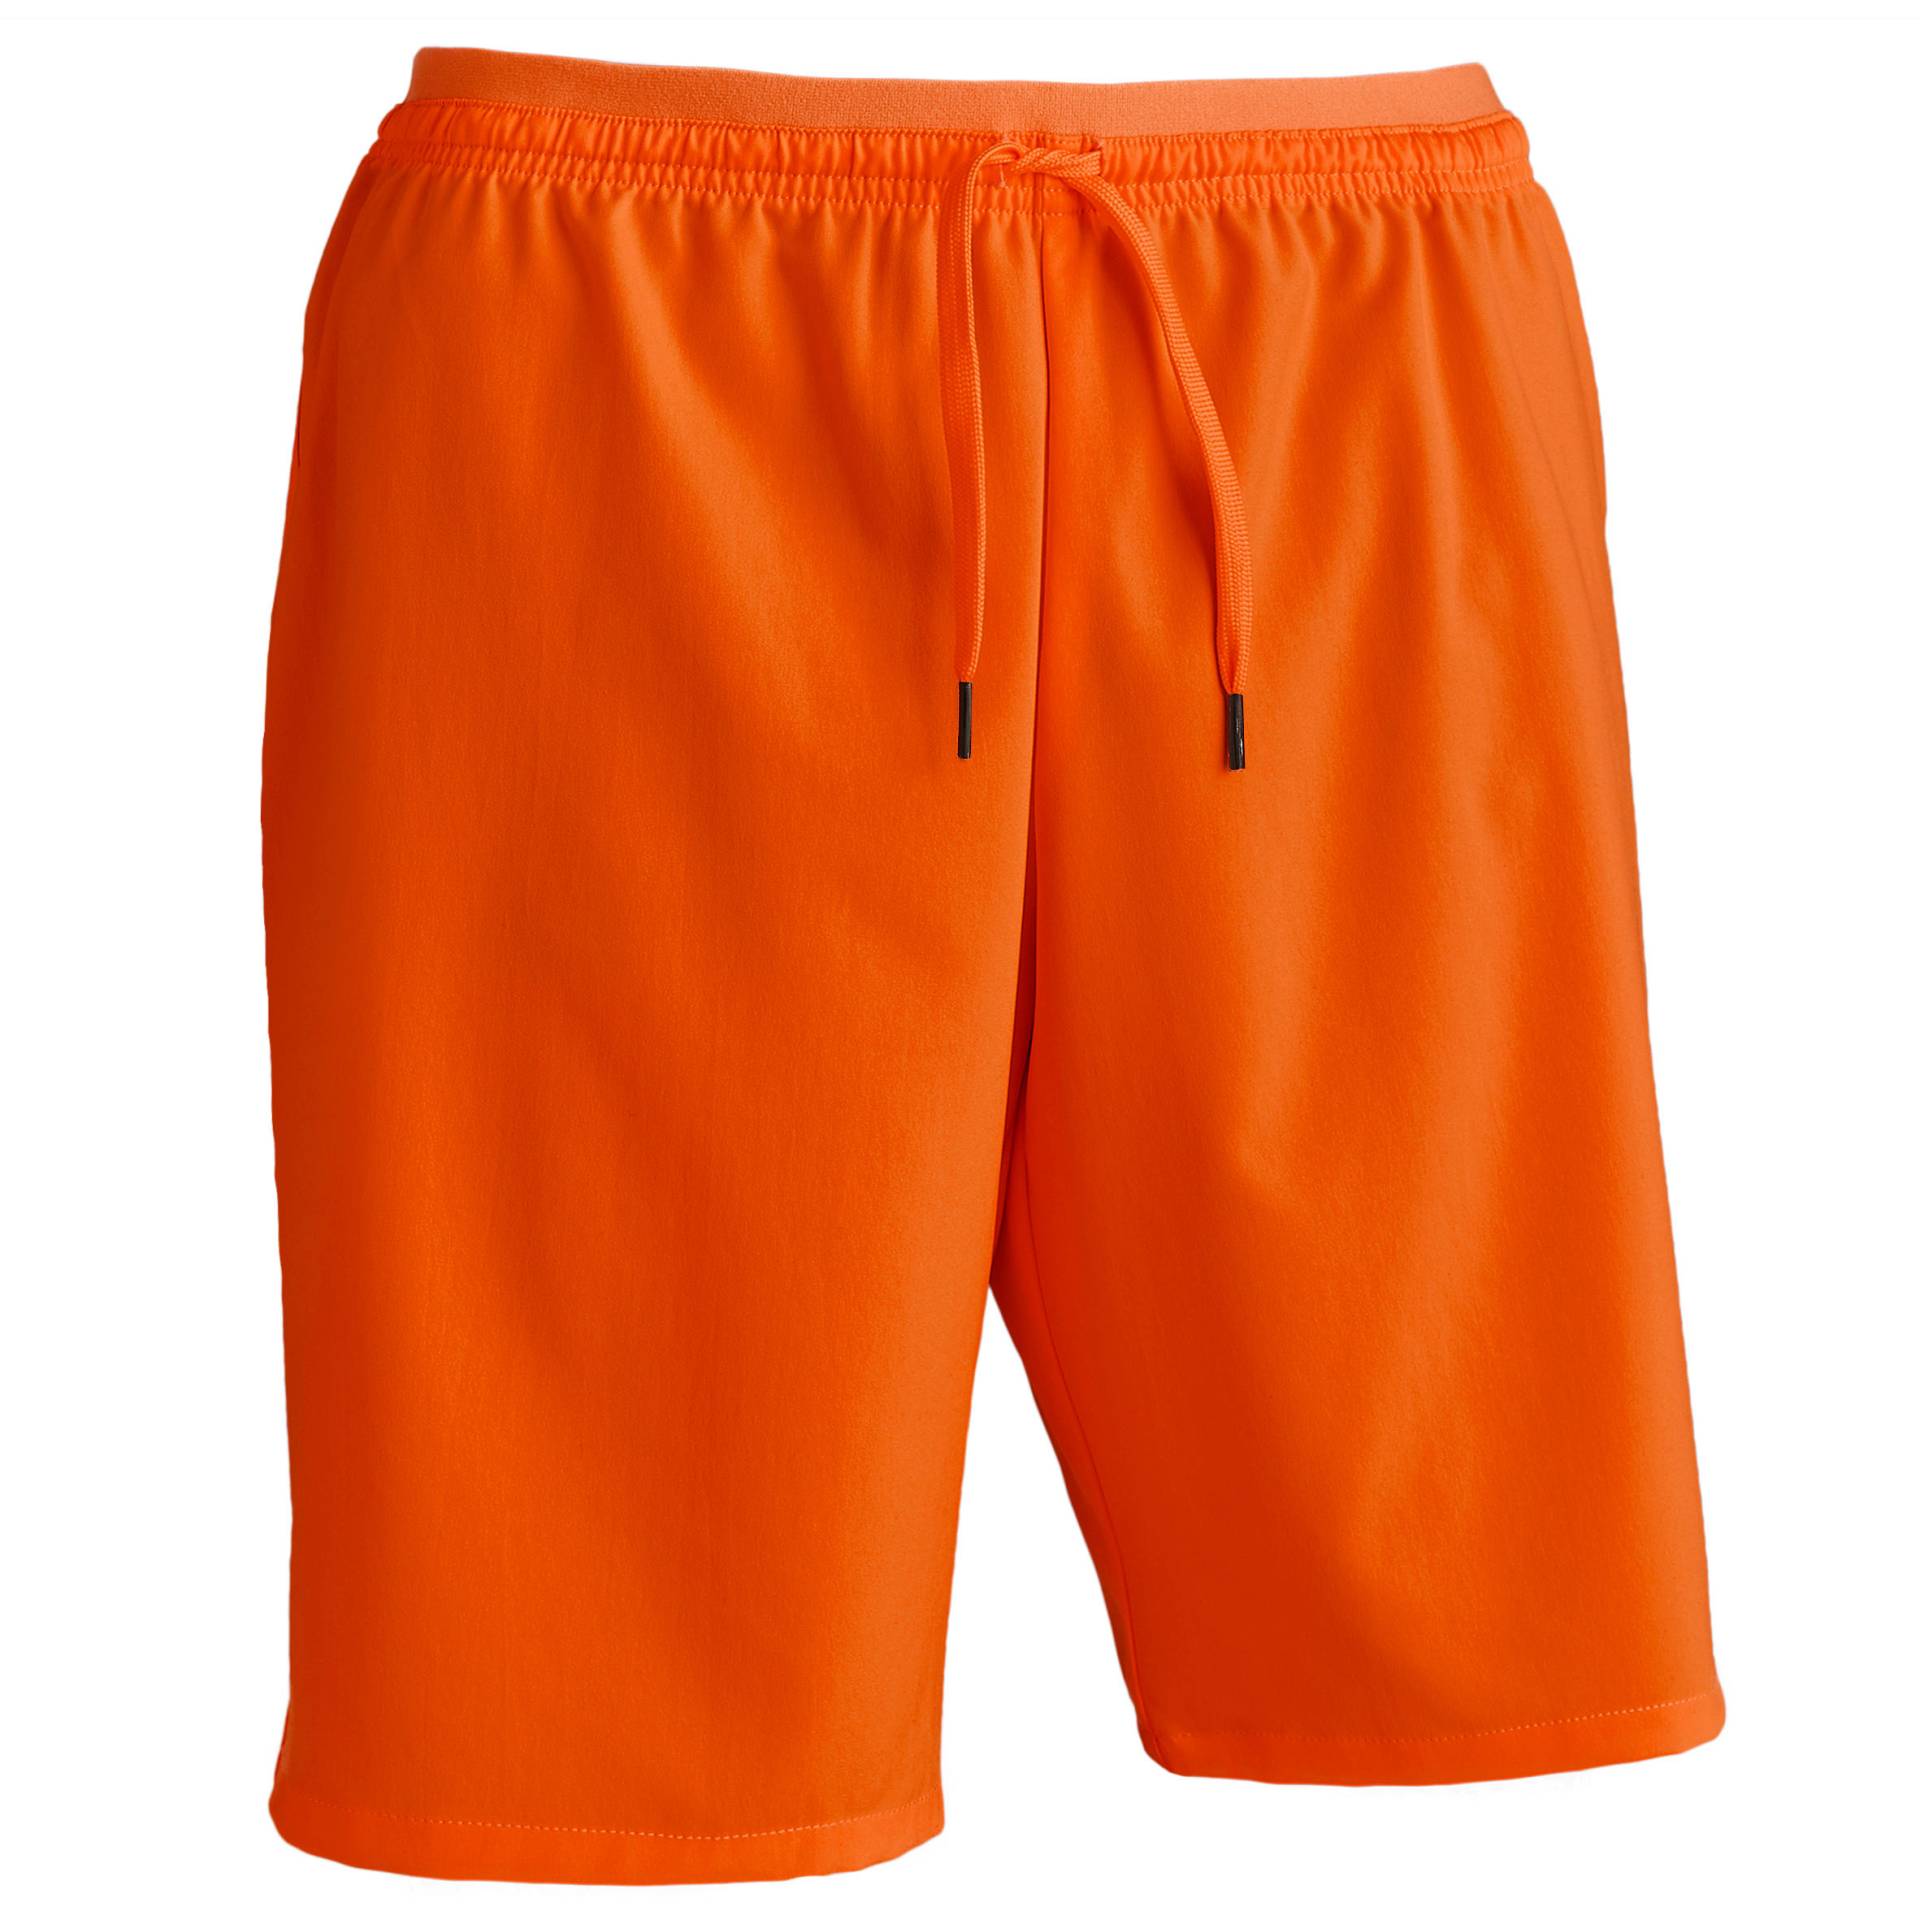 Damen/Herren Fussball Shorts Viralto orange von KIPSTA